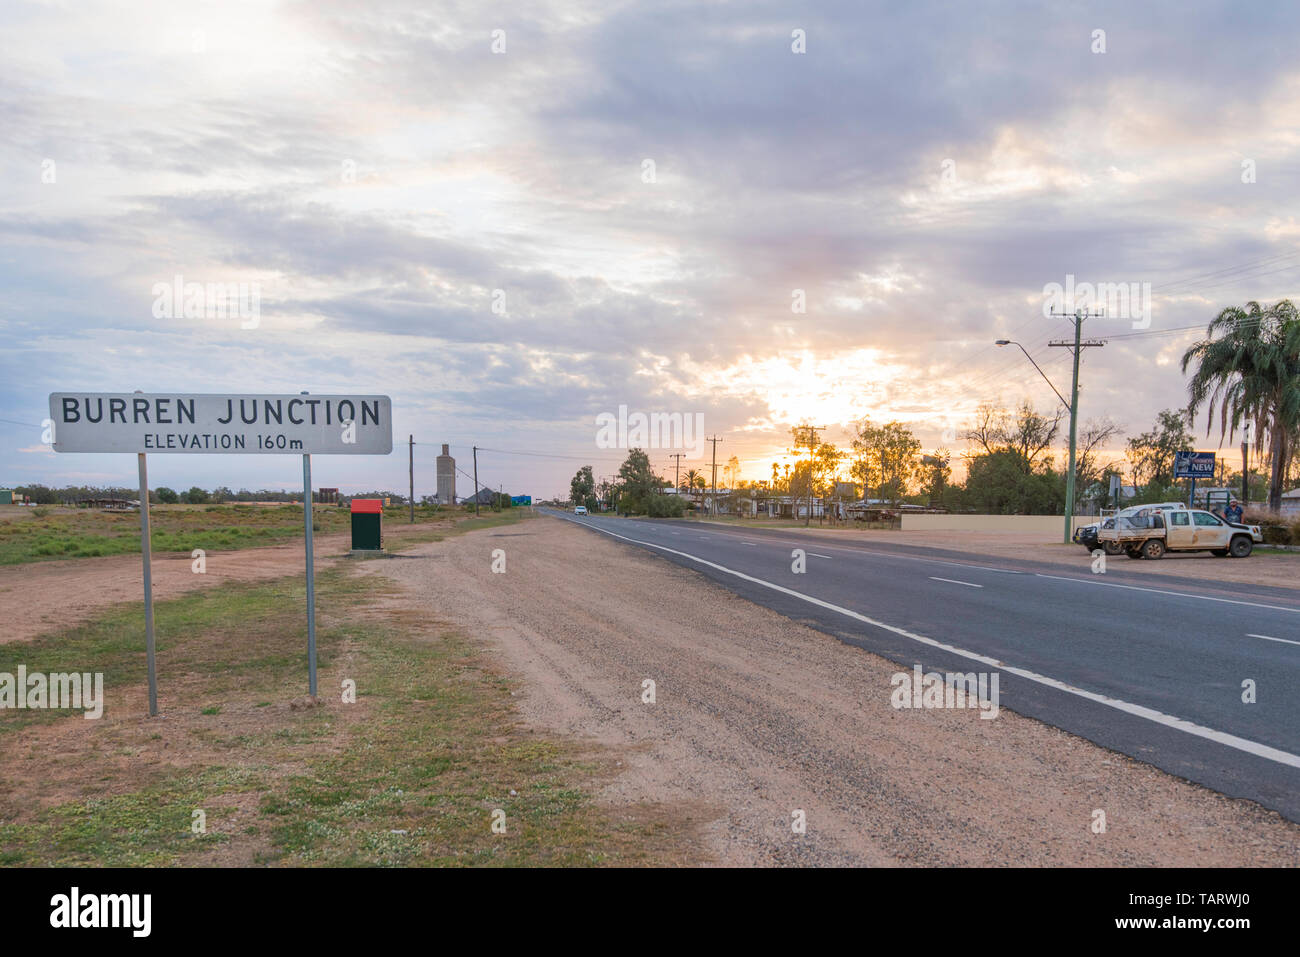 Die östliche Eintrag auf der Kamilaroi Highway in die New South Wales Land Stadt Burren Junction, Australien, Bevölkerung 276 (2016) Stockfoto